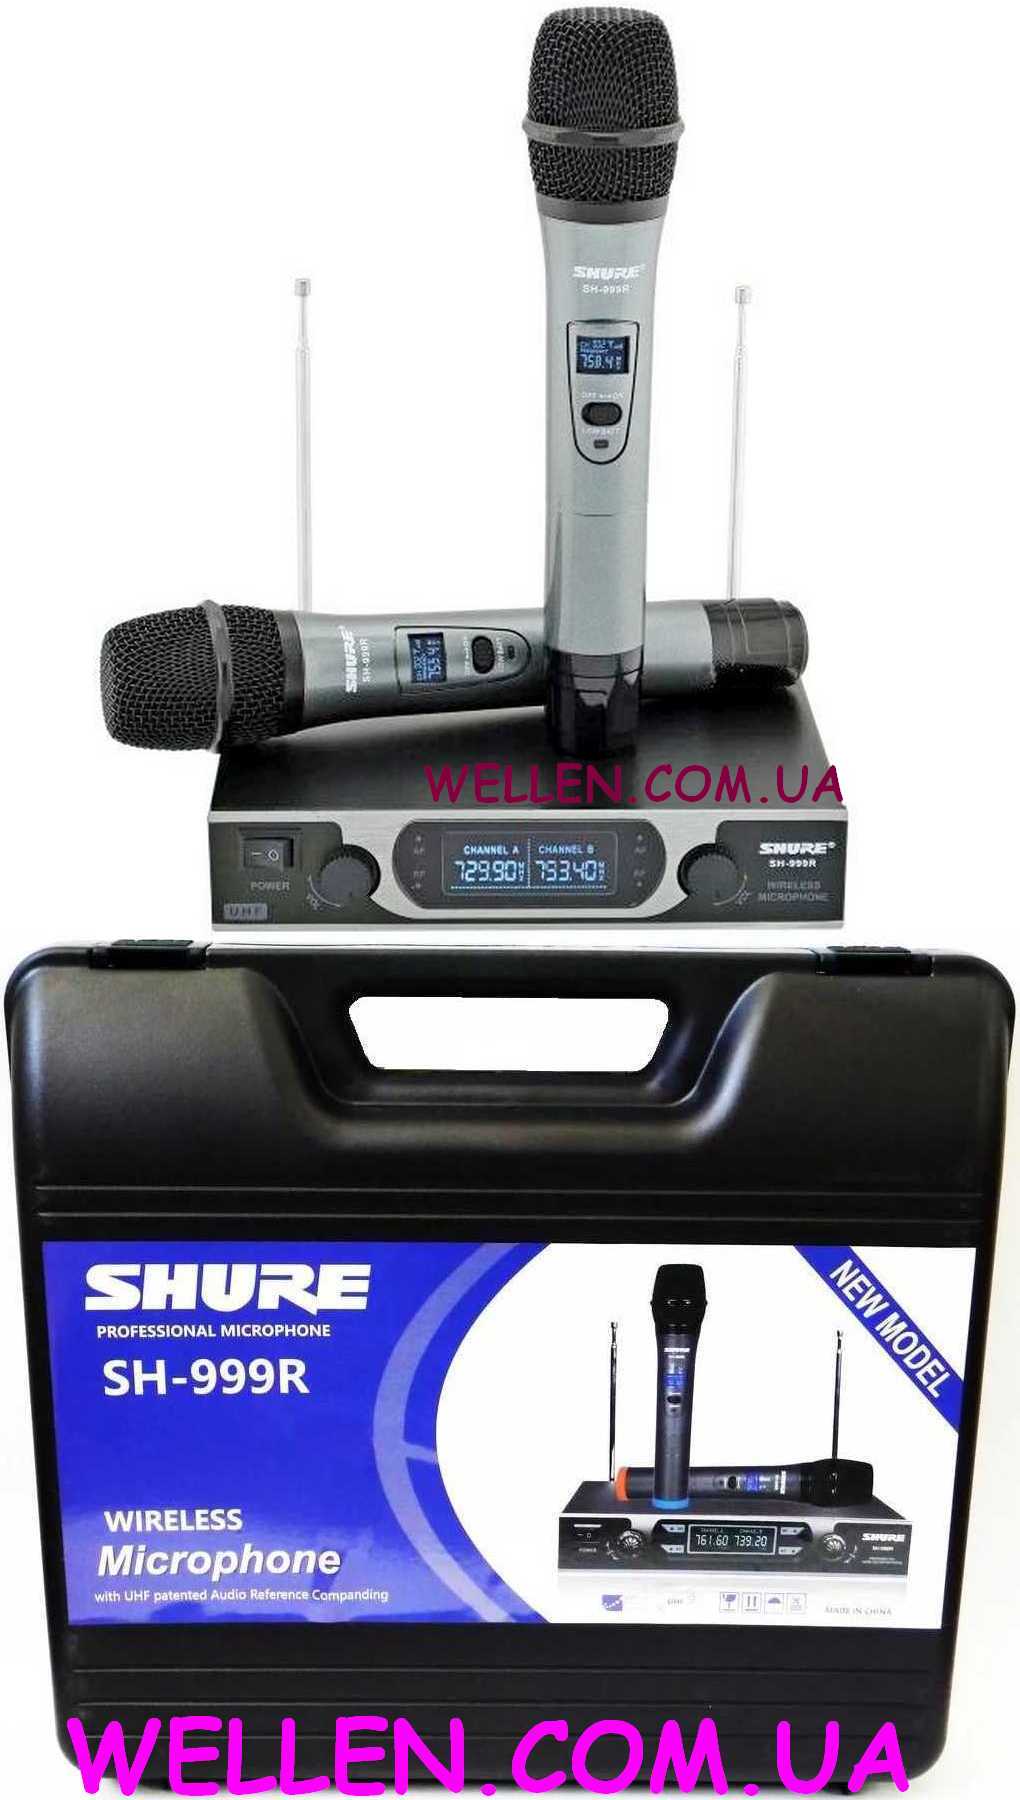 Shure SH-999R Радиосистема с 2 радиомикрофонами, платиковй кейс, на пальчиковых батарейках. Цена от 1200 грн.